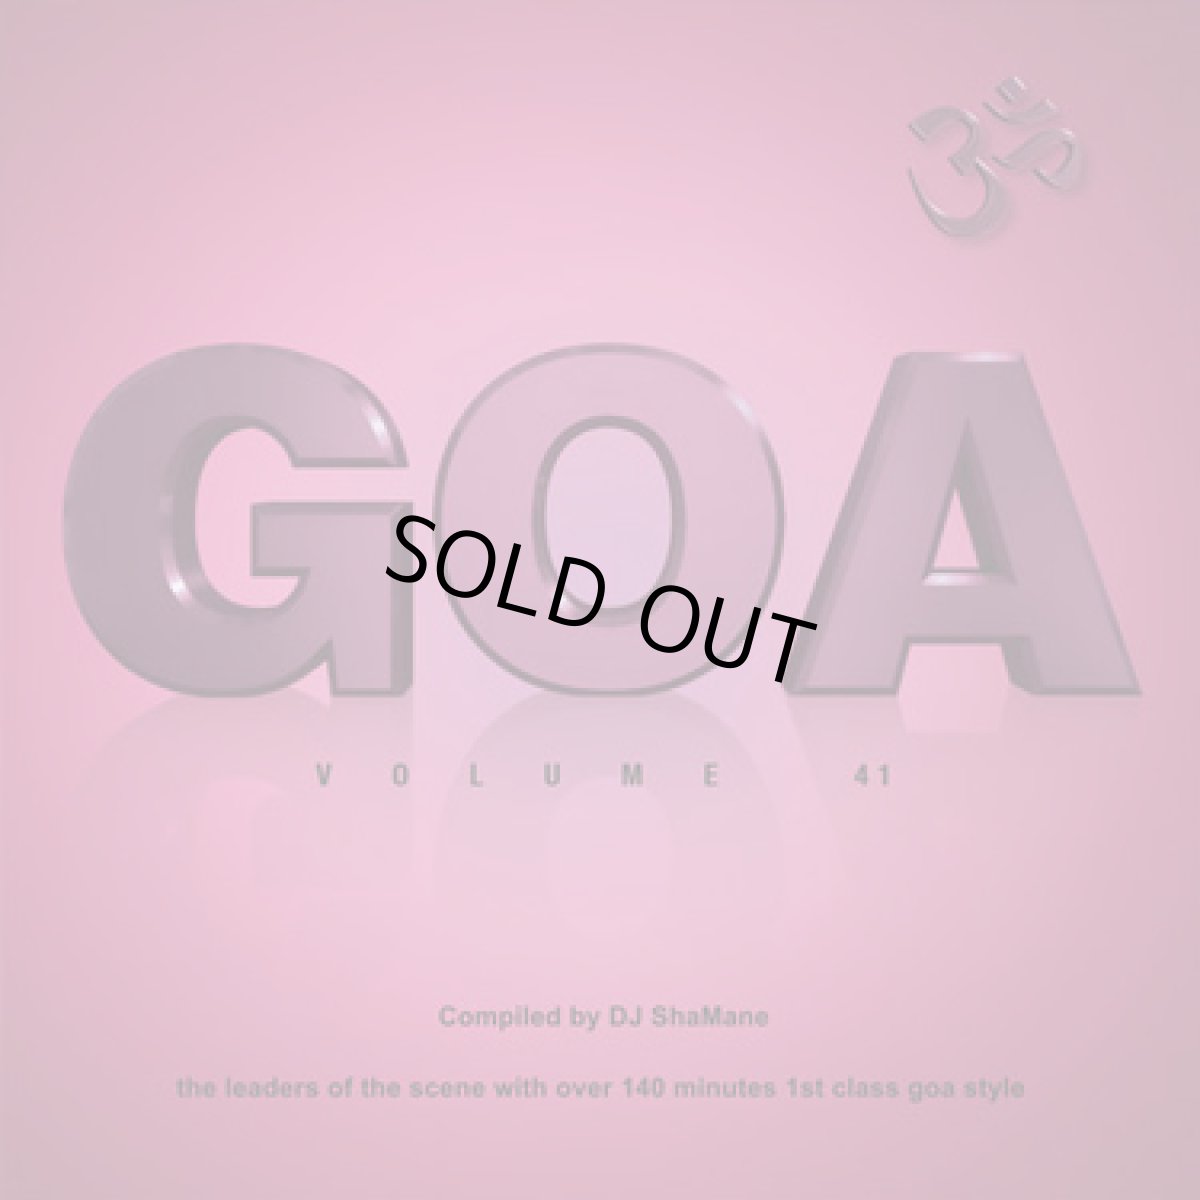 画像1: CD「V.A. / Goa Vol 41」2枚組【プログレッシヴトランス・PSYトランス】 (1)